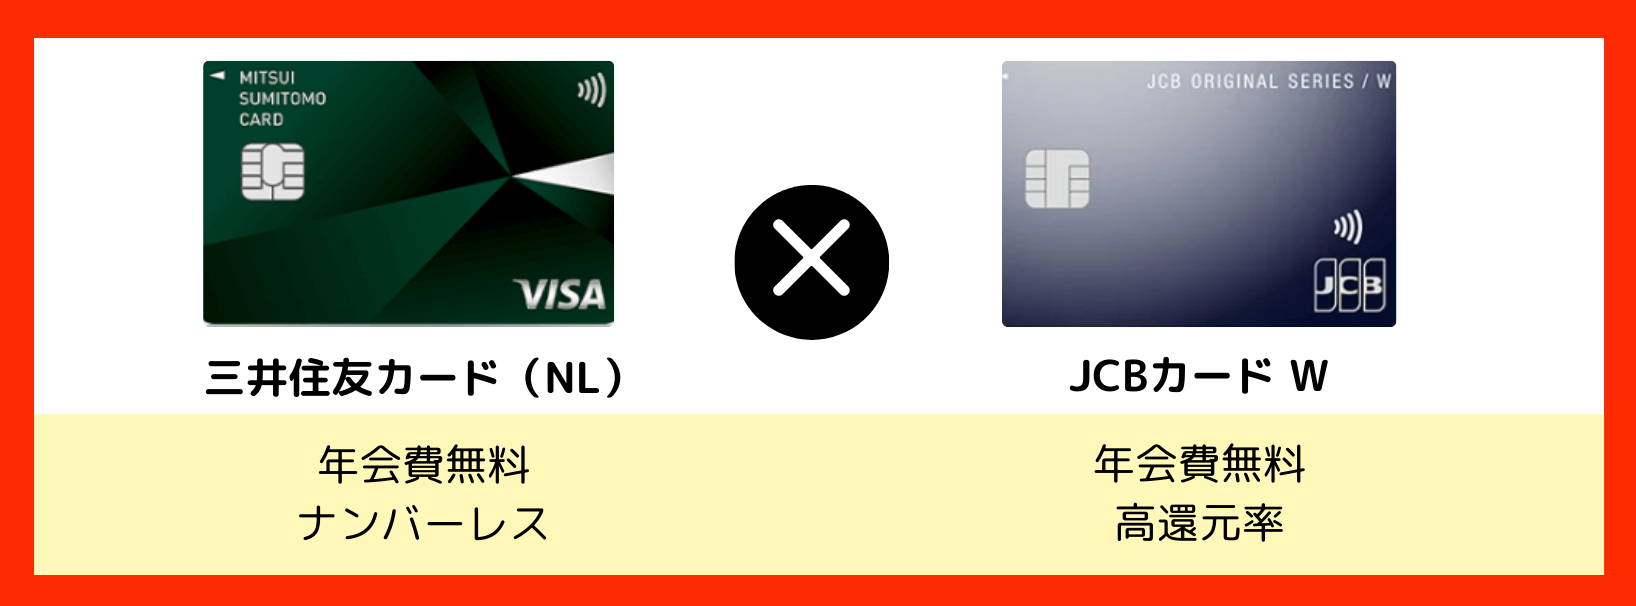 クレジットカード最強の2枚_三井住友カードNL×JCBカードW